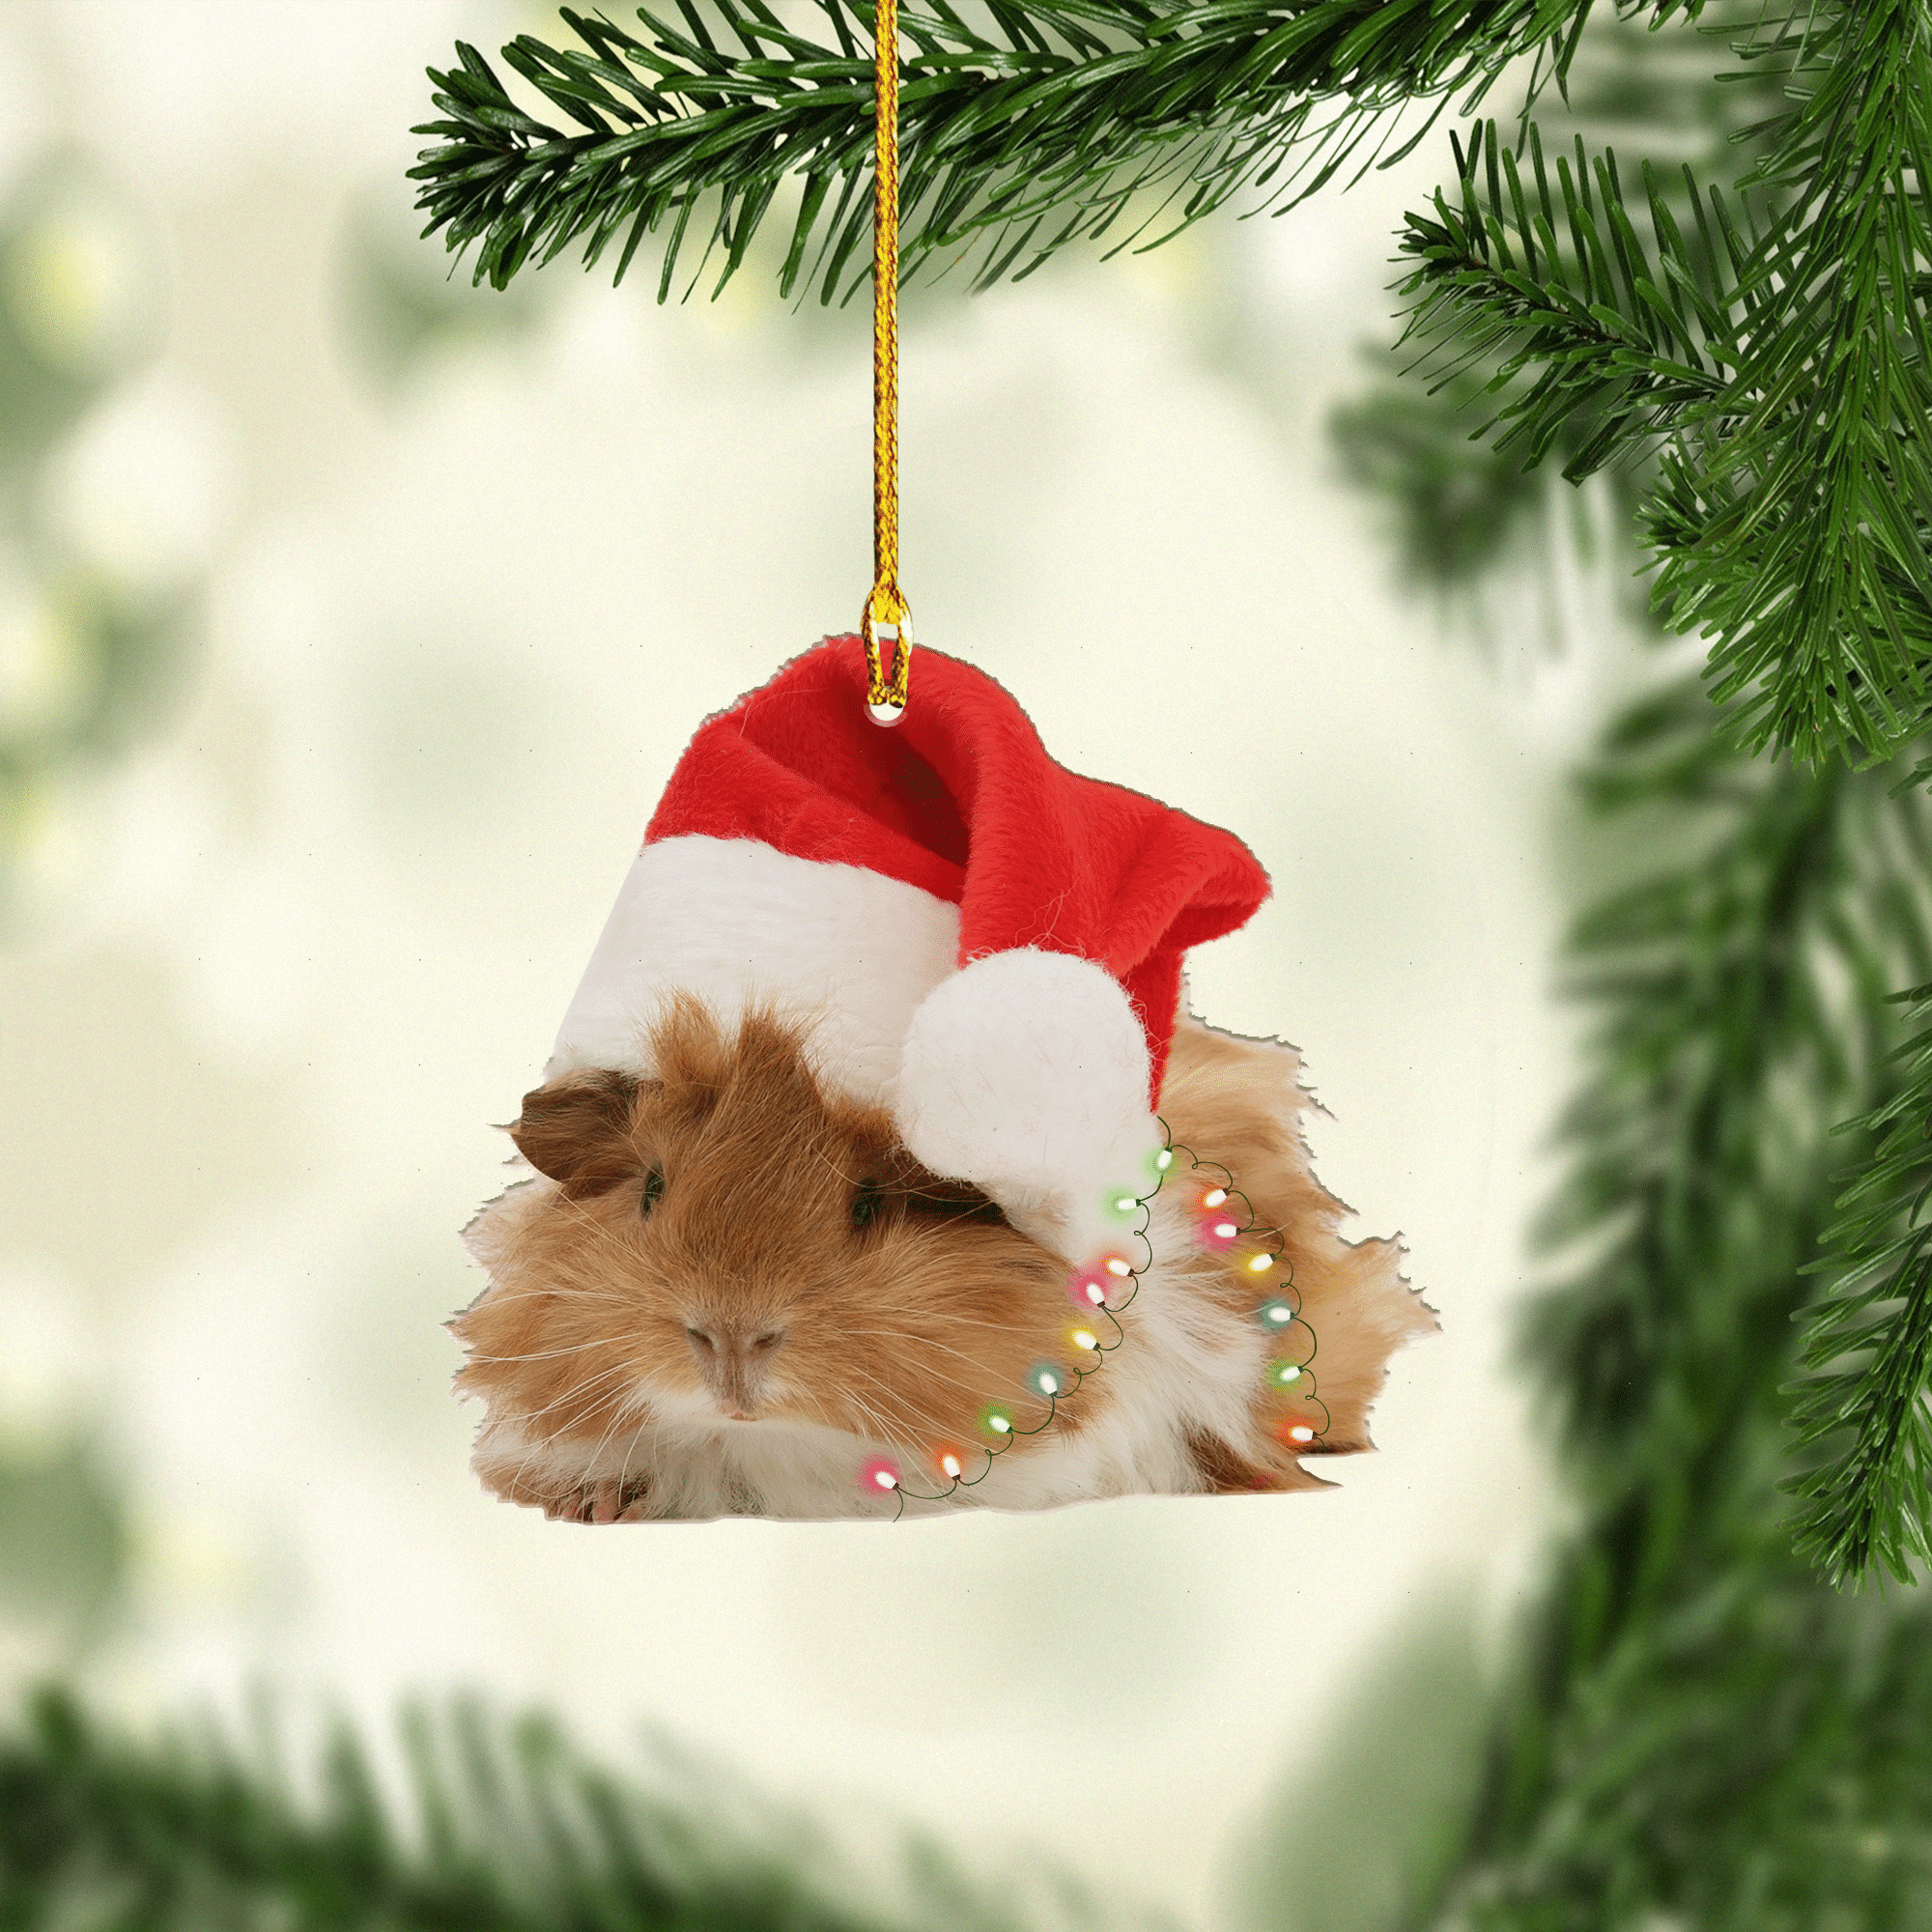 Guinea Pig Christmas Ornament/ Custom Name Ornament/ Christmas Ornament Gift For Guinea Pig Lovers/ Christmas Dog Friends Hanging Ornament